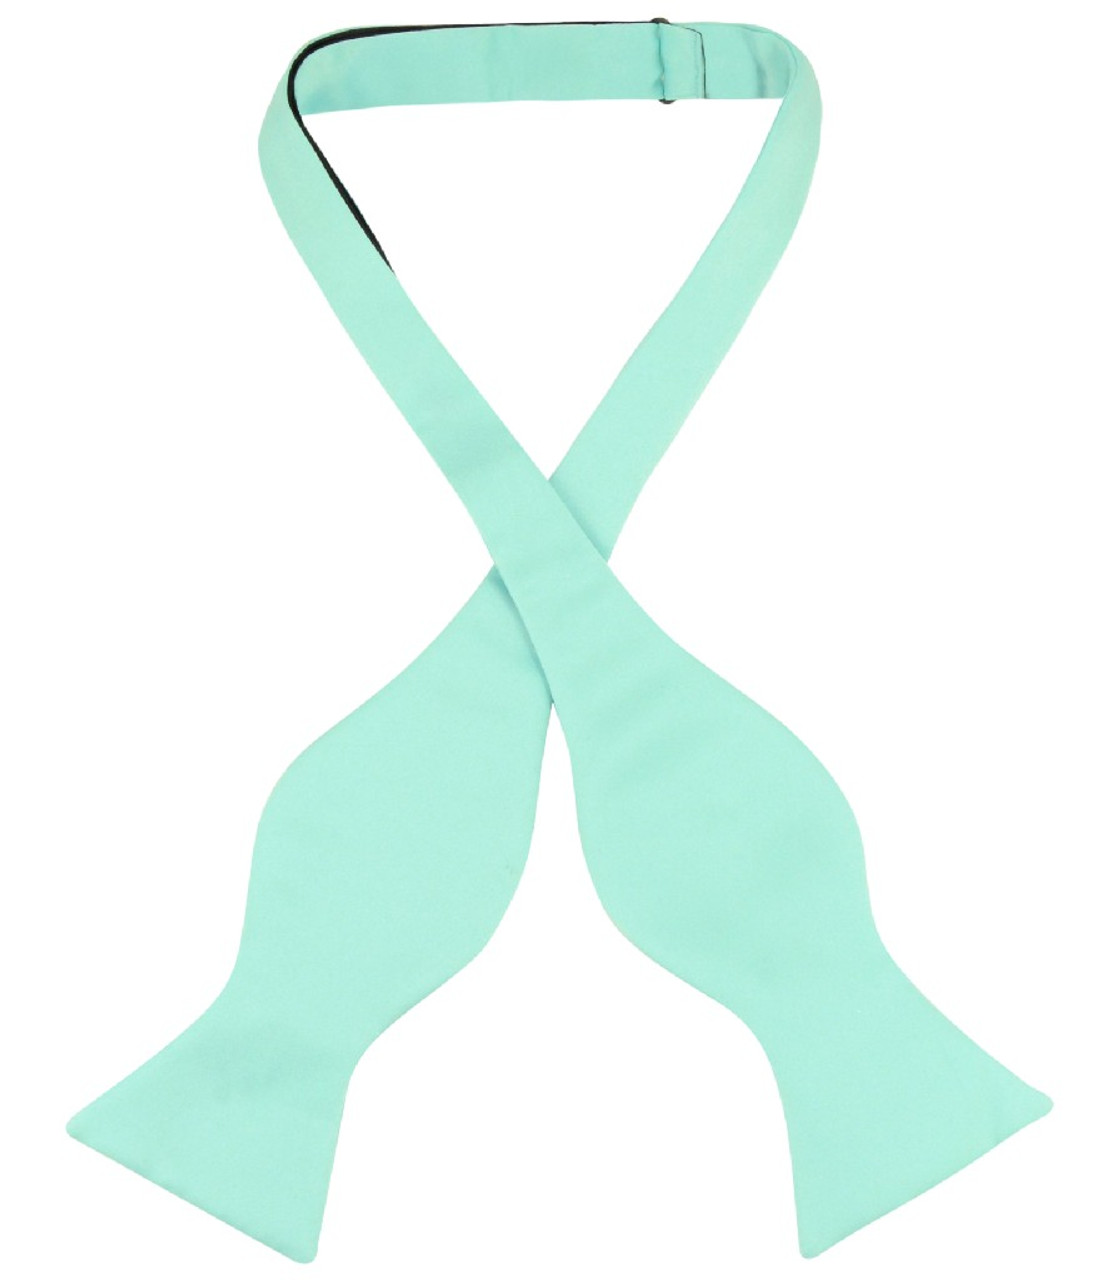 Vesuvio Napoli Self Tie Bow Tie Solid Aqua Green Color Mens BowTie